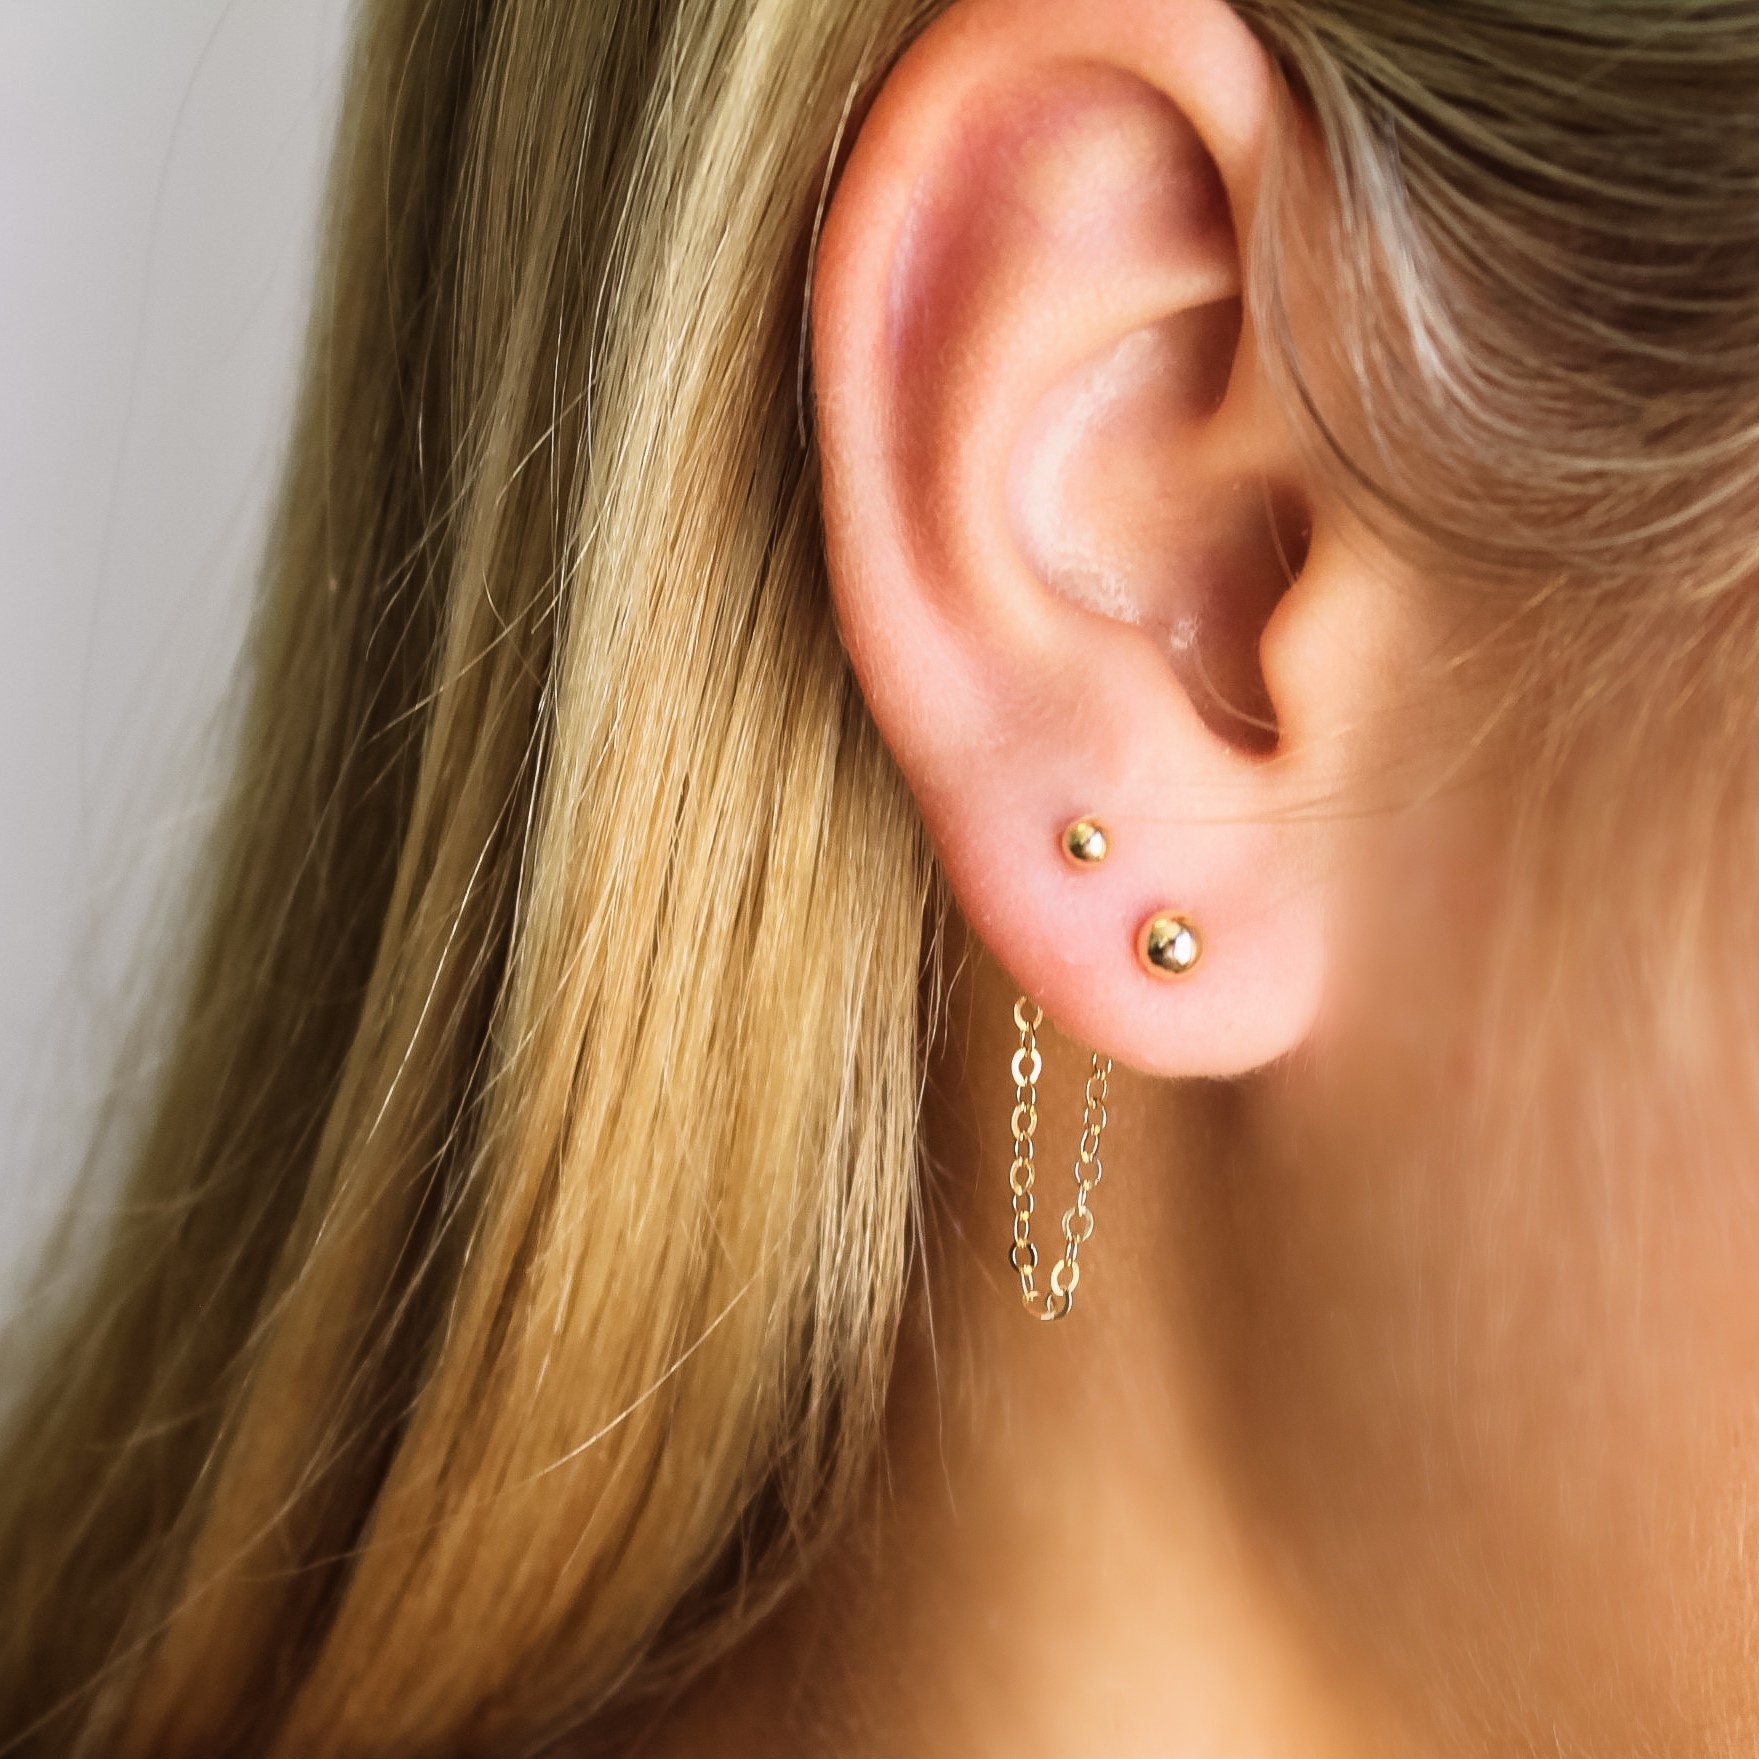 Piercing Earrings Australia Flash Sales  wwwamorgionhotelgr 1695652025